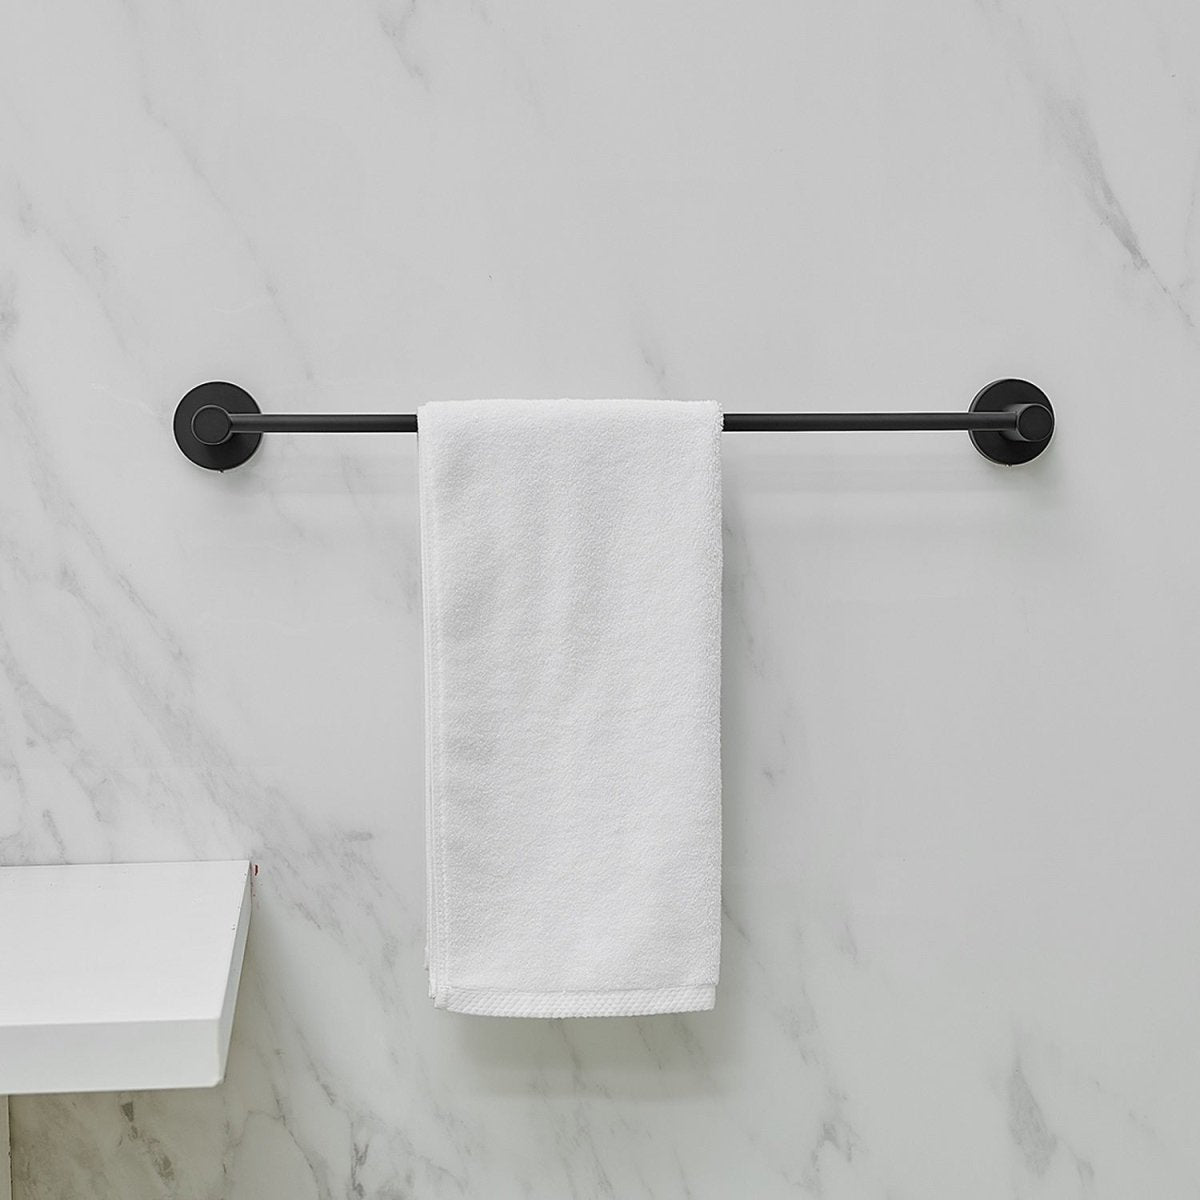 5 PCS Towel Bar Towel Hook Paper Holder Set Matte Black - buyfaucet.com